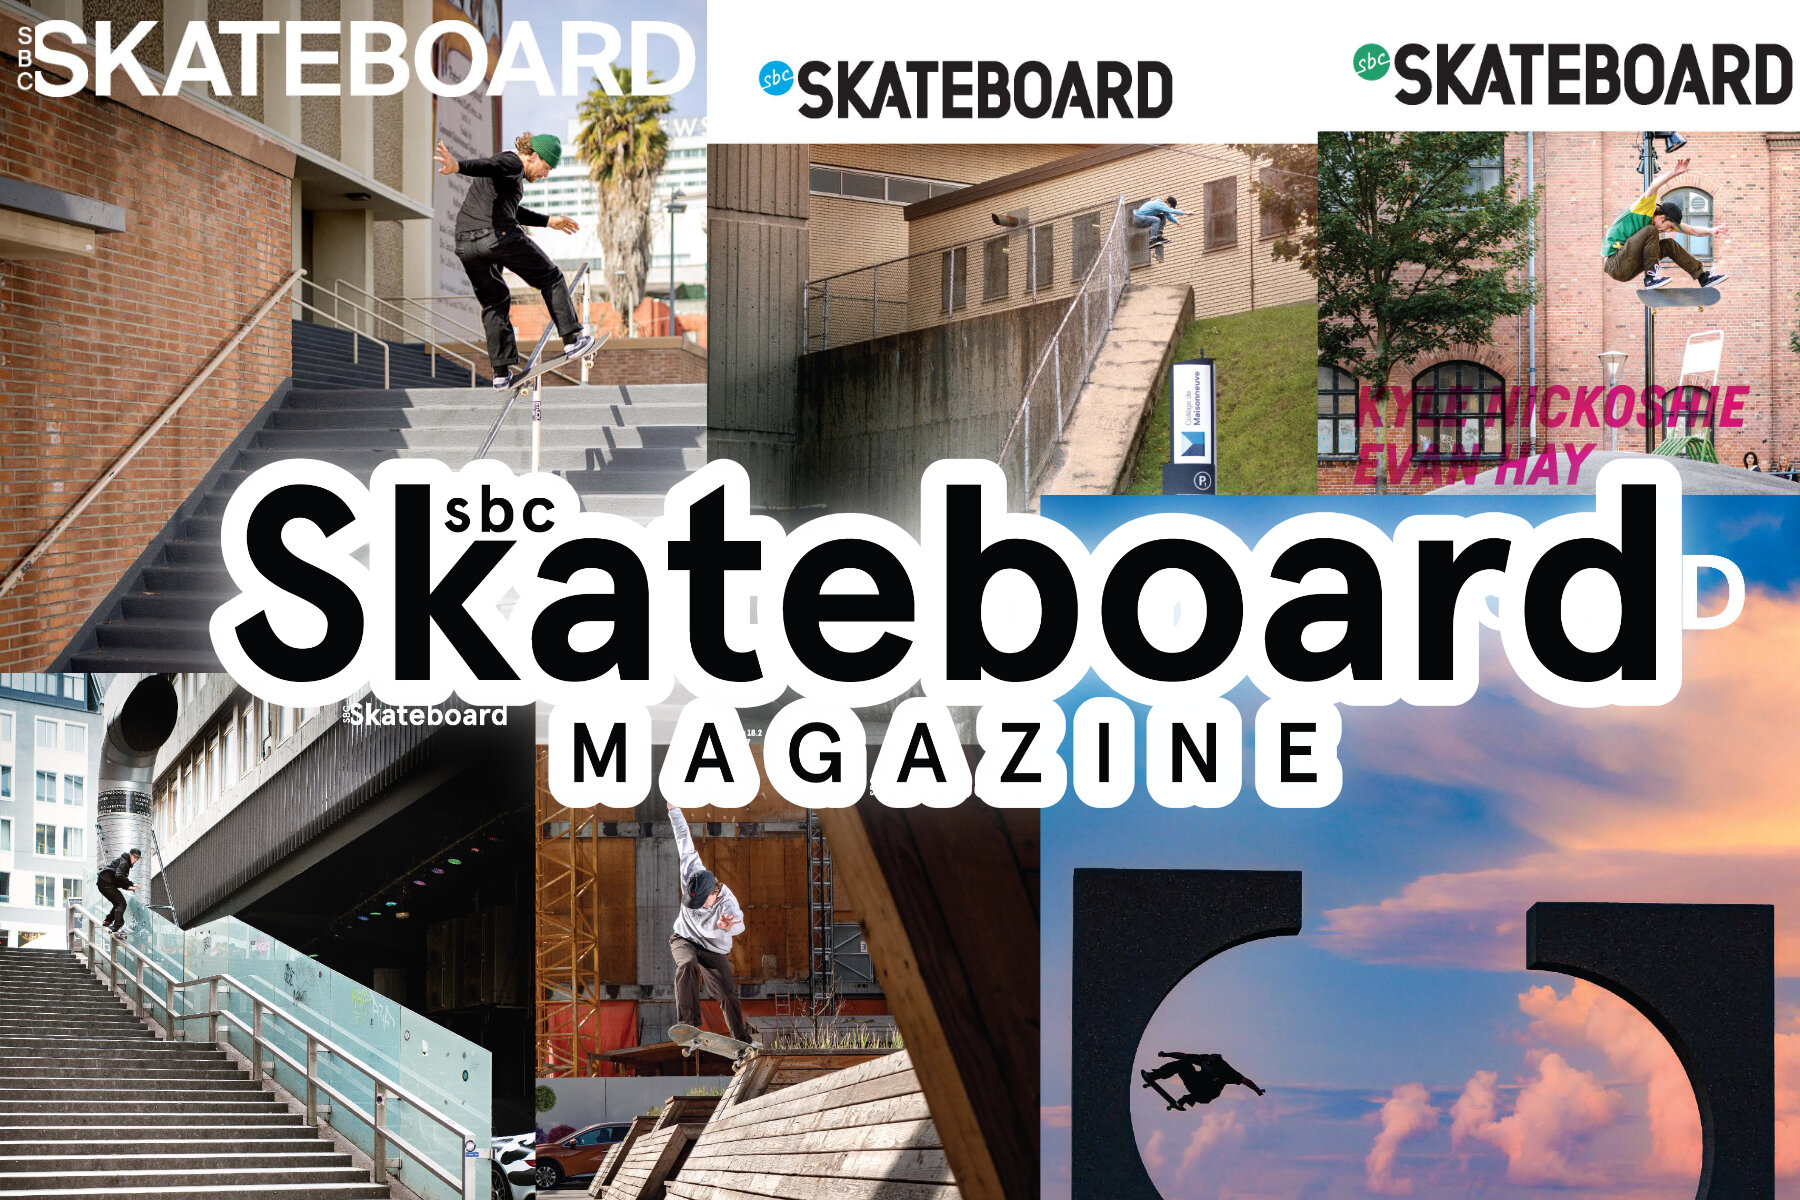 SBC Skateboard Magazine